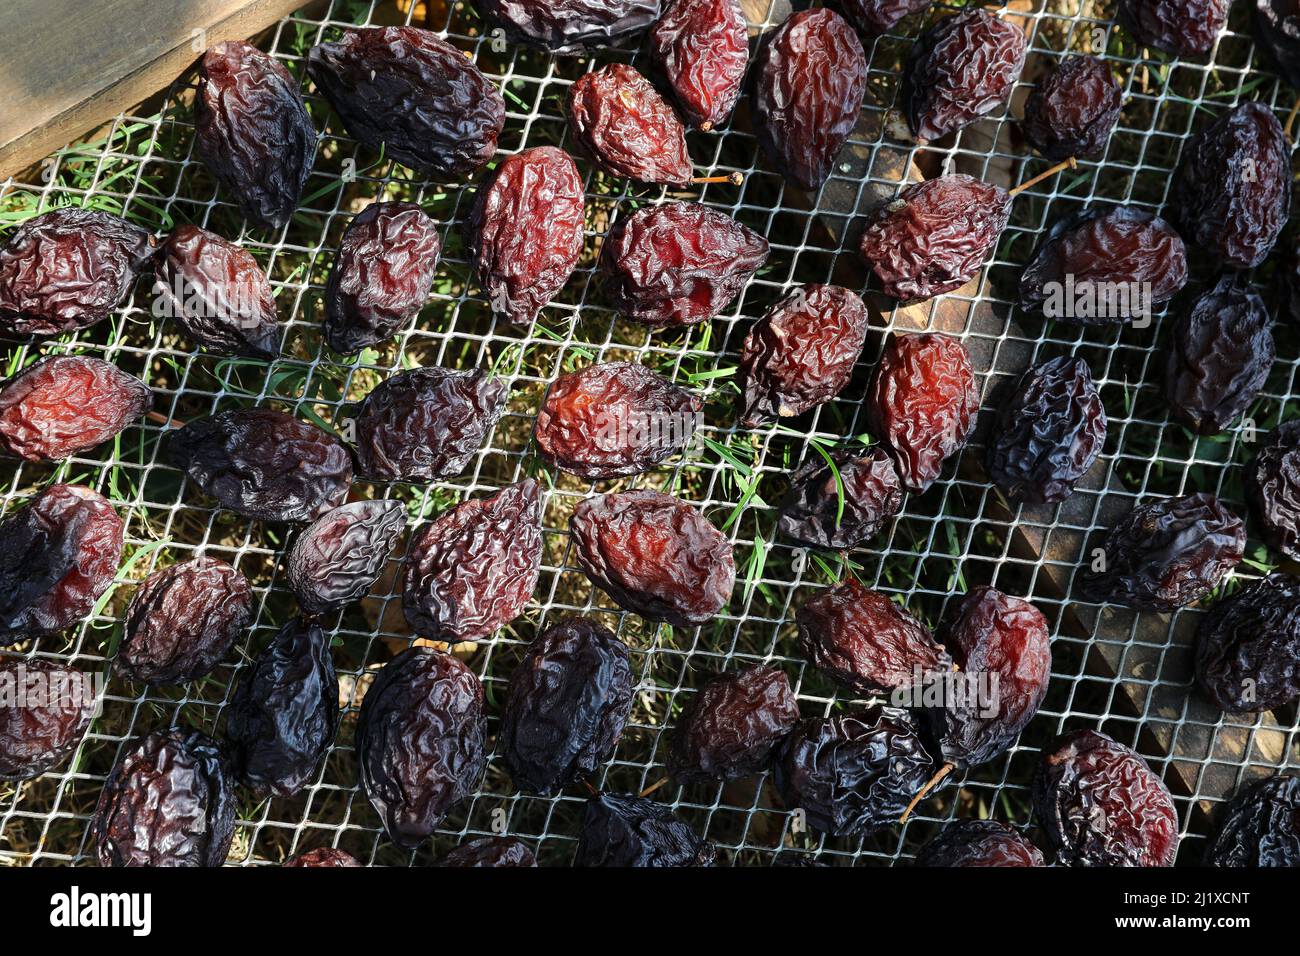 Anbau von Agen-Pflaumen: Ente-Pflaumentrocknung in Kisten nach der Ernte. Die Früchte werden auf Schalen verteilt, um getrocknet zu werden Stockfoto